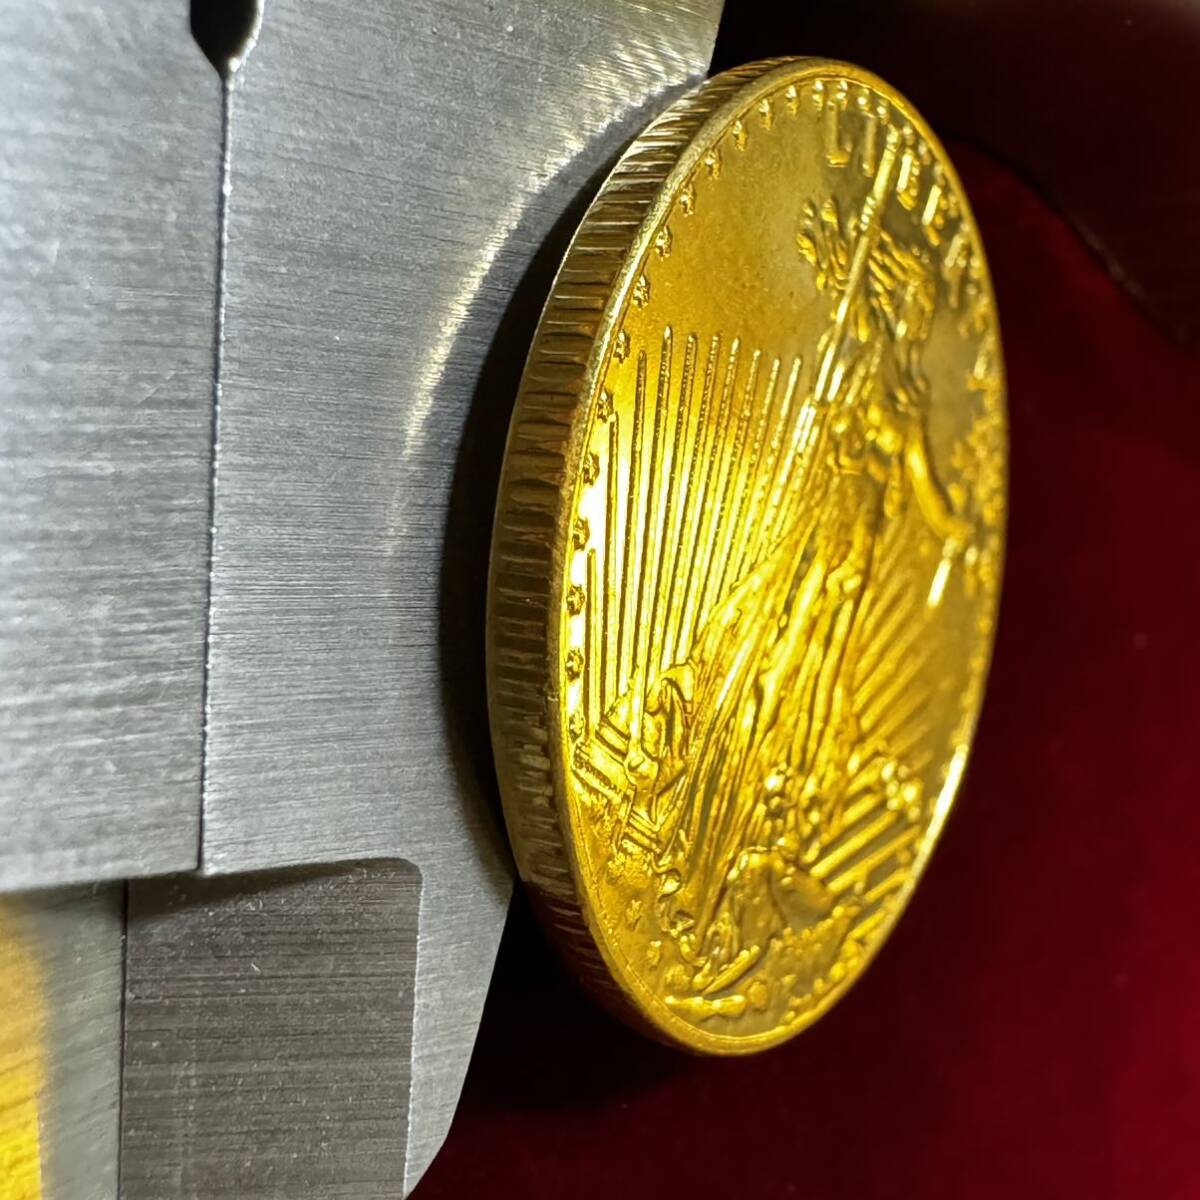 アメリカ 硬貨 古銭 自由の女神 2020年 国会議事堂 トーチ オリーブ 太陽 ワシ コイン 外国古銭 海外硬貨 の画像3